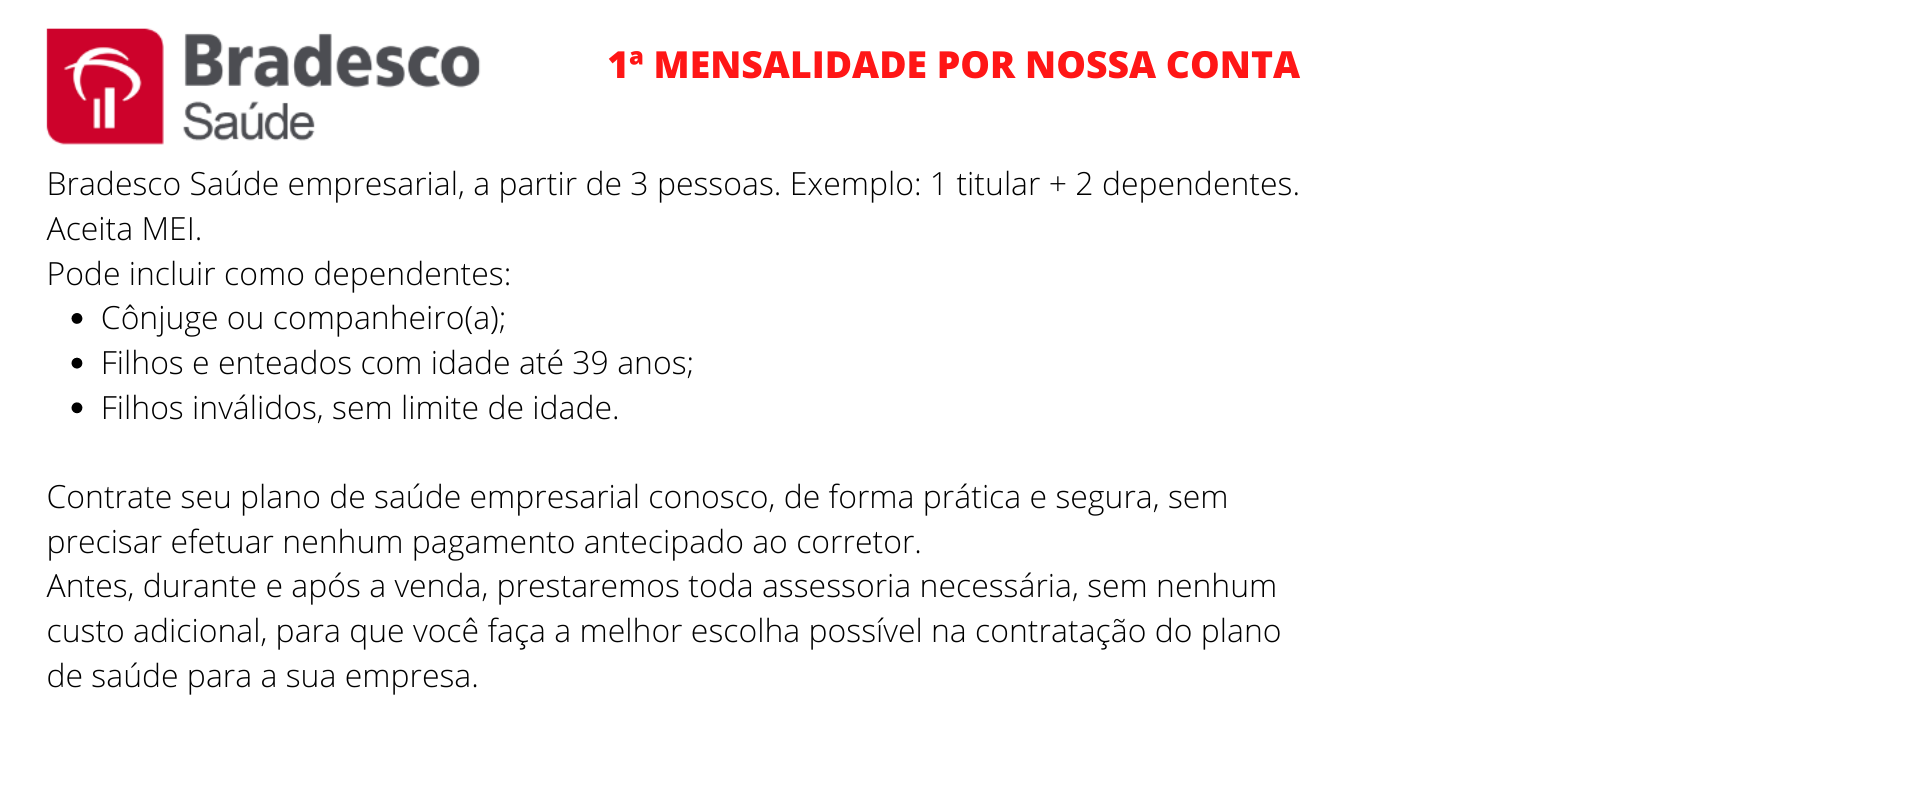 Bradesco Saúde Empresarial - São Sebastião 